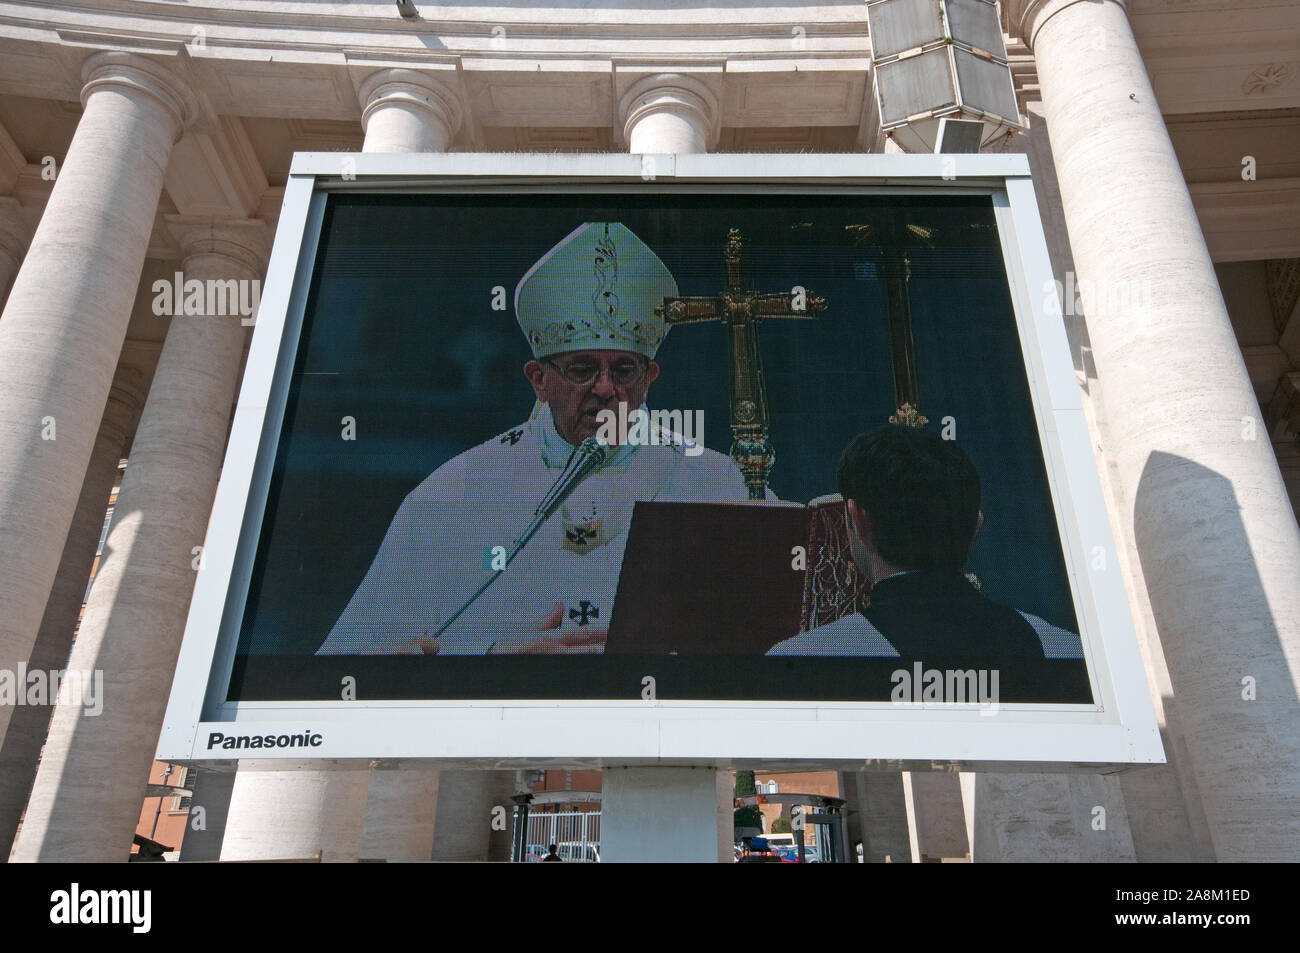 Papst Francesco (Jorge Mario Bergoglio) in den großen Bildschirm während der Feier der Messe, Saint Peter's Square (Piazza San Pietro), Rom, Latium, Italien Stockfoto